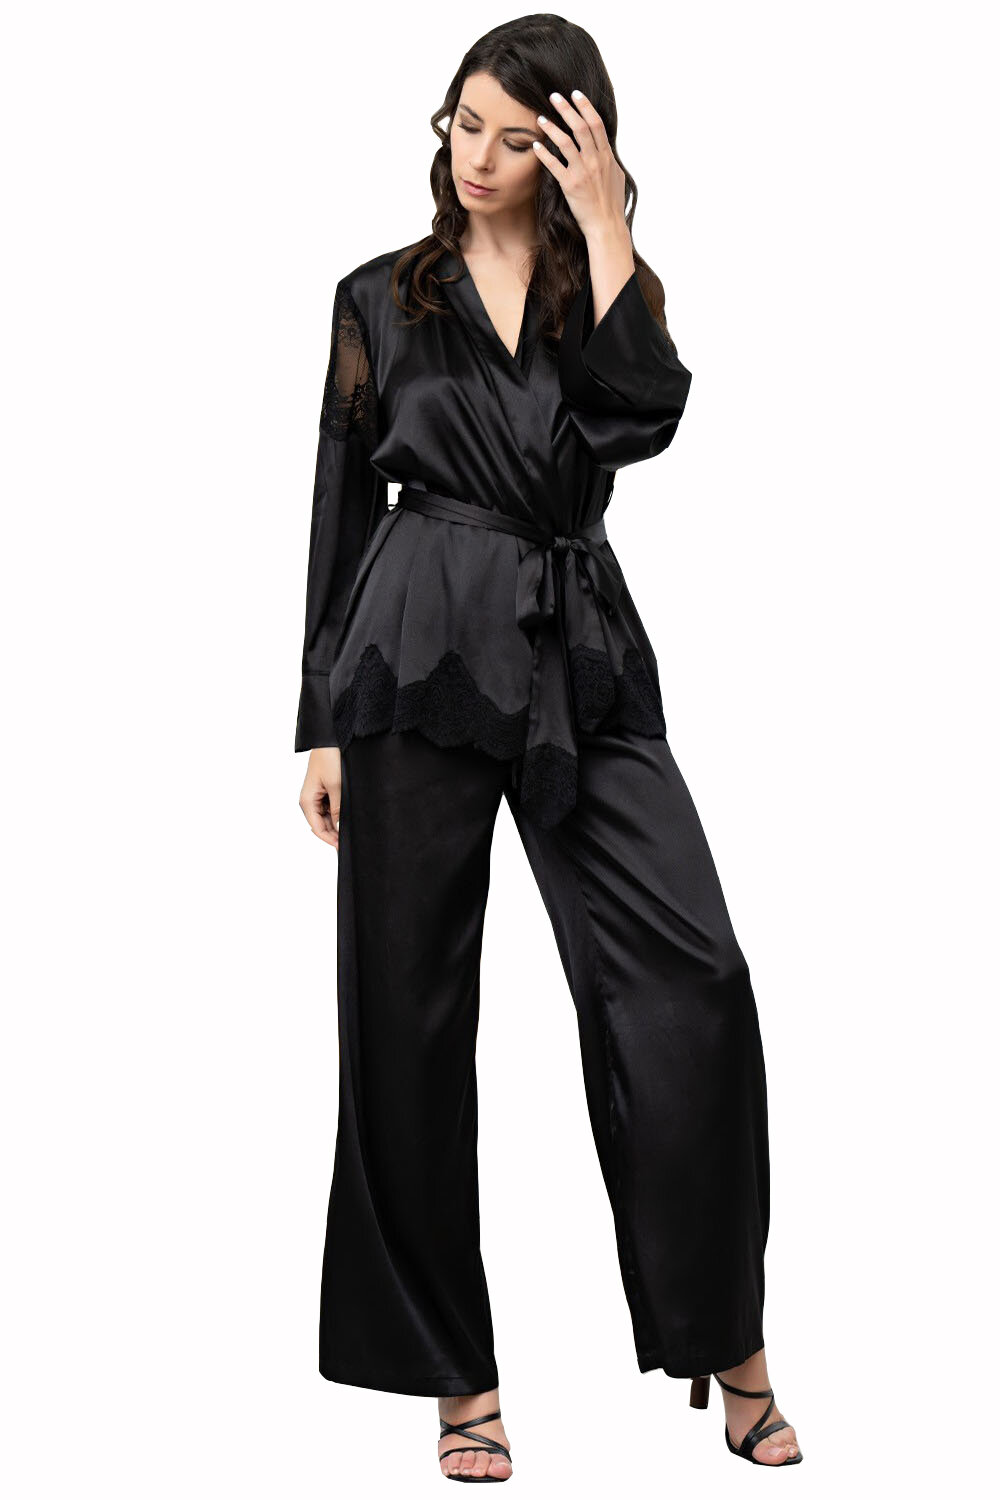 Комплект MIA-AMORE Aurelia 3896, жакет, брюки и бралетт, шелк 70%, черный (Размер: XL) - фотография № 1